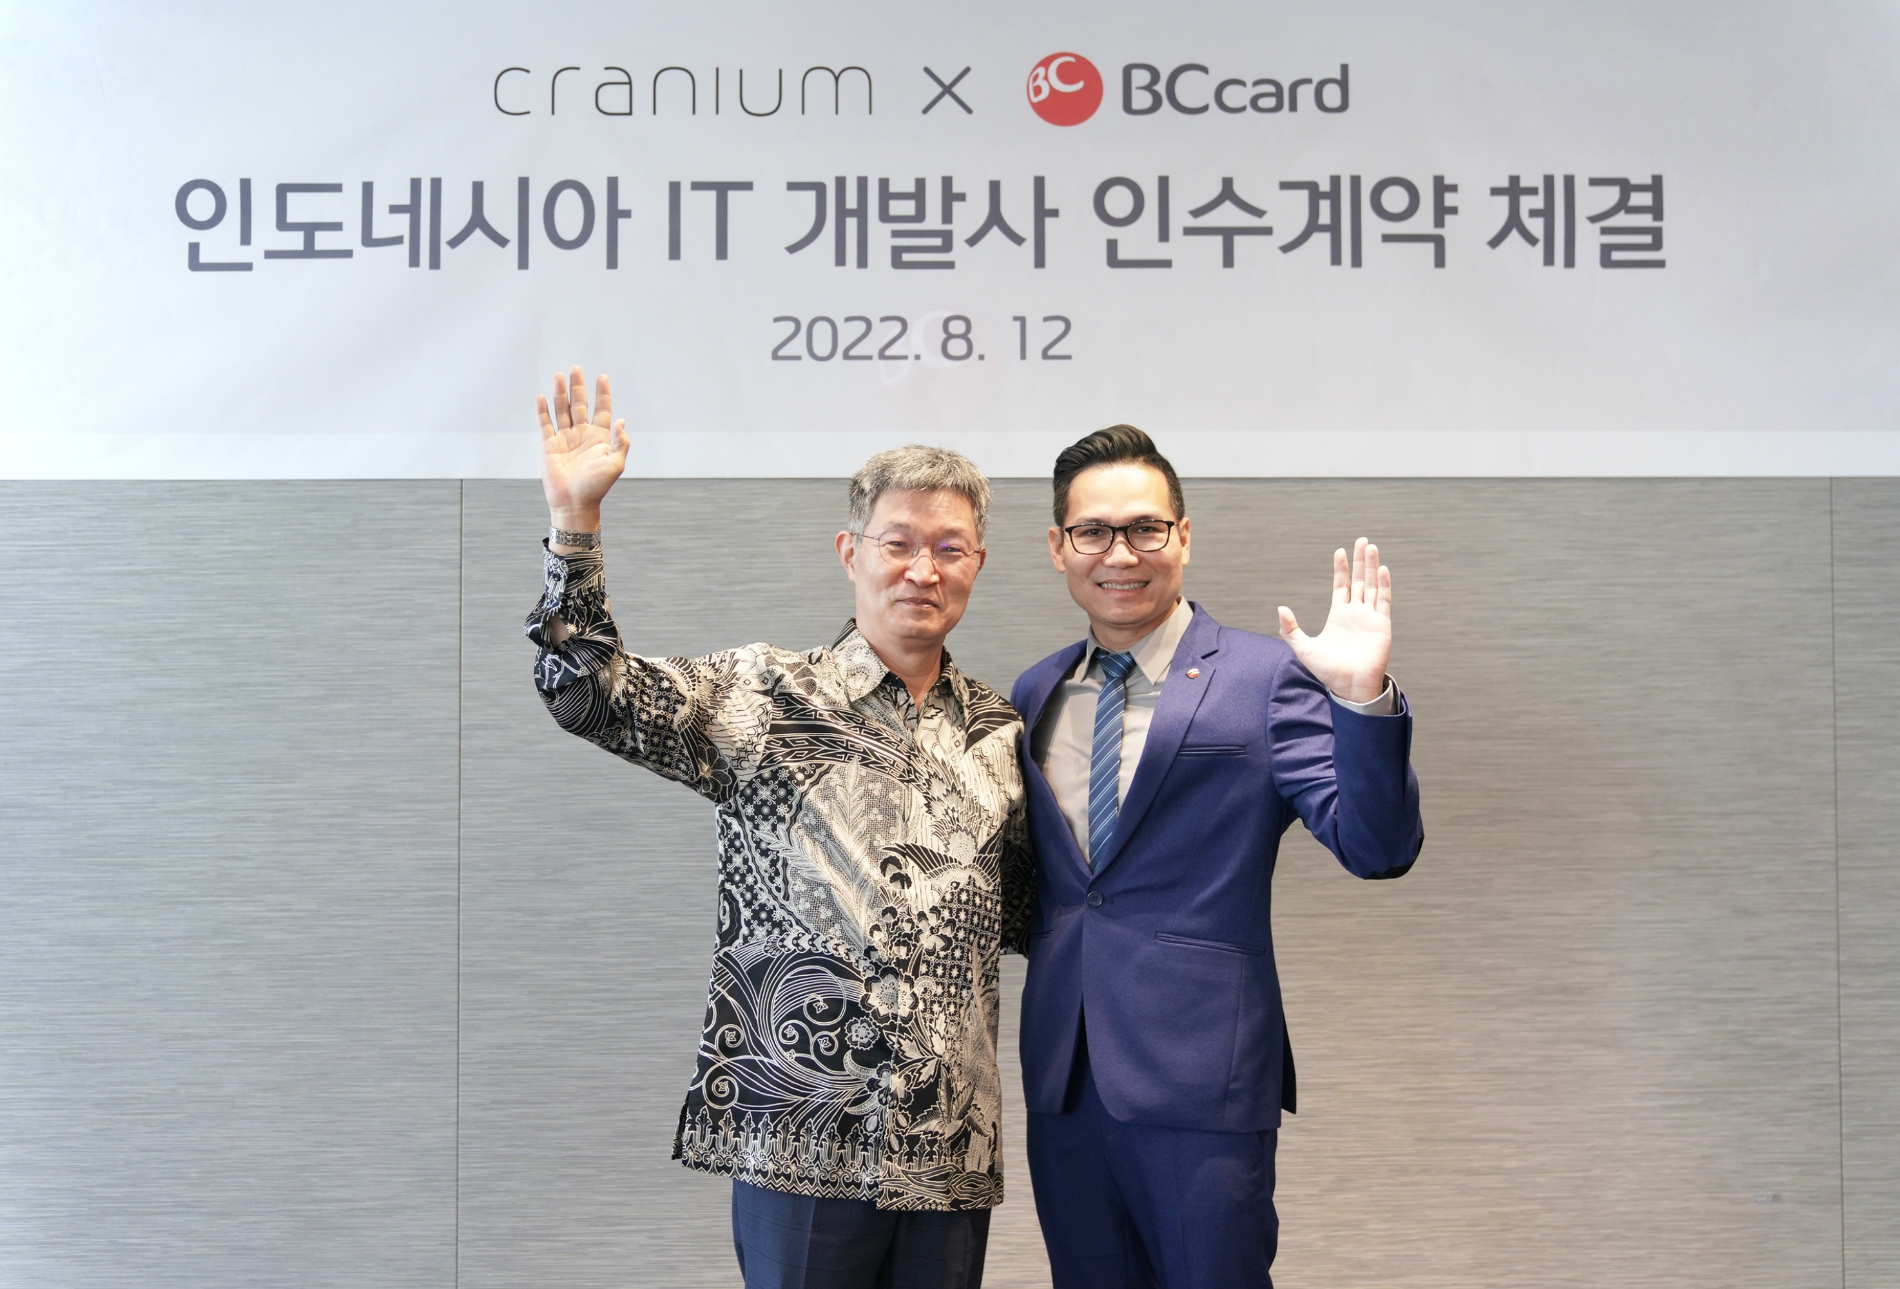 최원석 BC카드 사장(왼쪽)과 윌리엄 킹 크래니움 사장(오른쪽)이 12일 인도네시아 IT개발사 ‘크래니움’ 인수 계약을 체결했다. / 사진제공=BC카드 